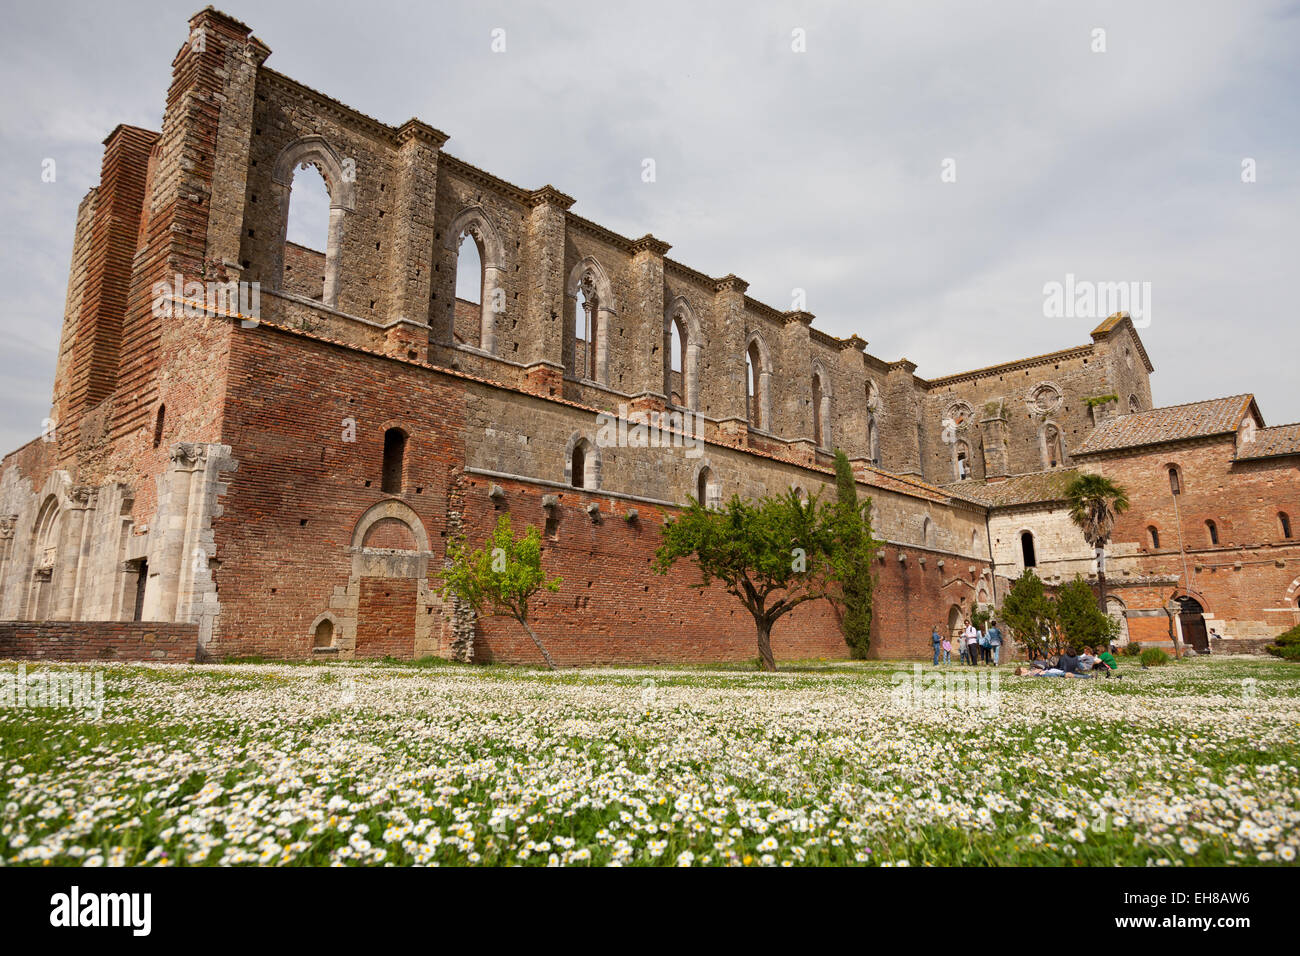 San Galgano Abbey ruins in Chiusdino, Siena, Tuscany, Italy, Europe Stock Photo